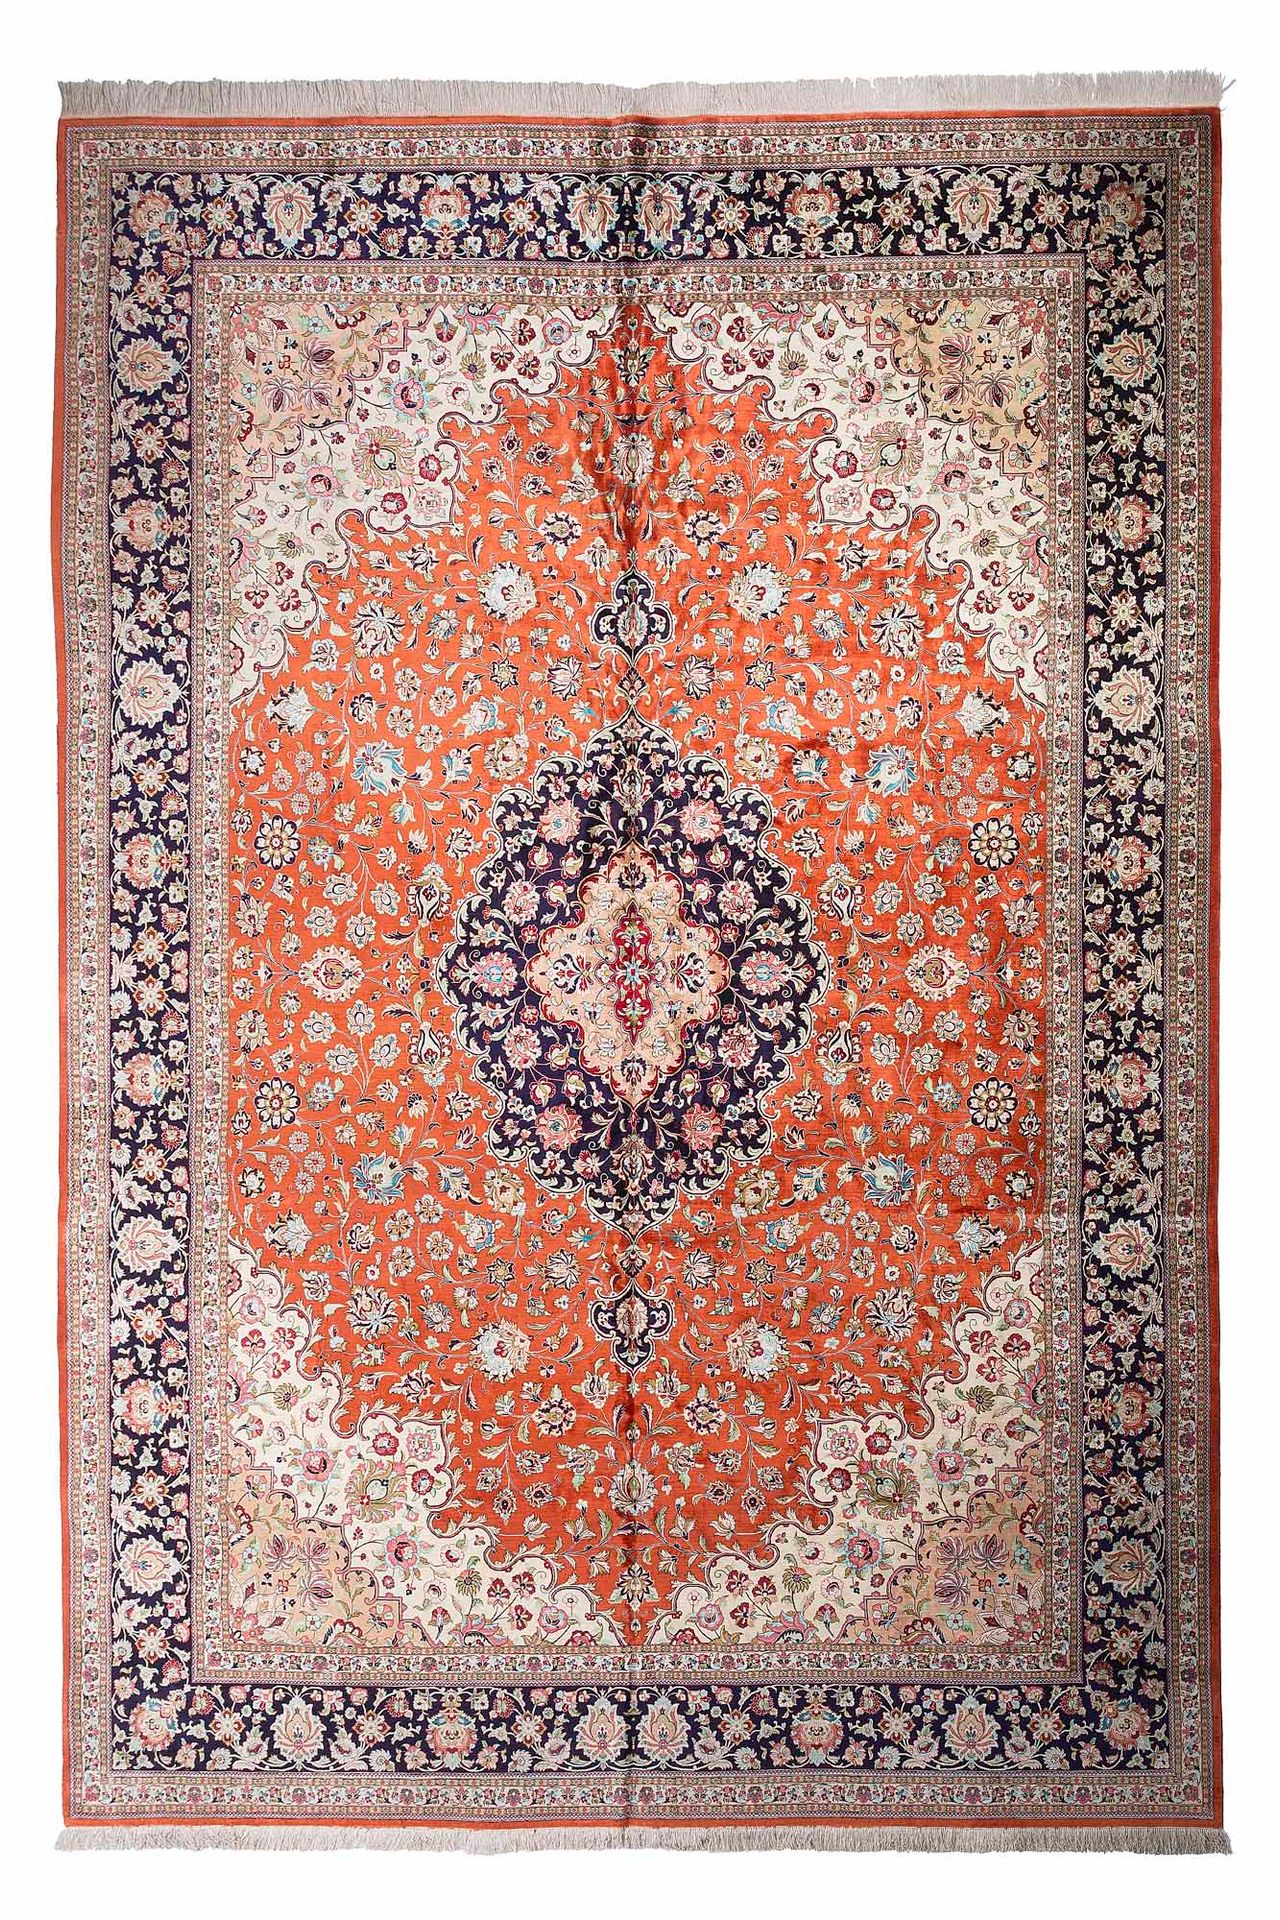 Null Importante tappeto in seta GHOUM (Iran), periodo shah, metà del XX secolo

&hellip;